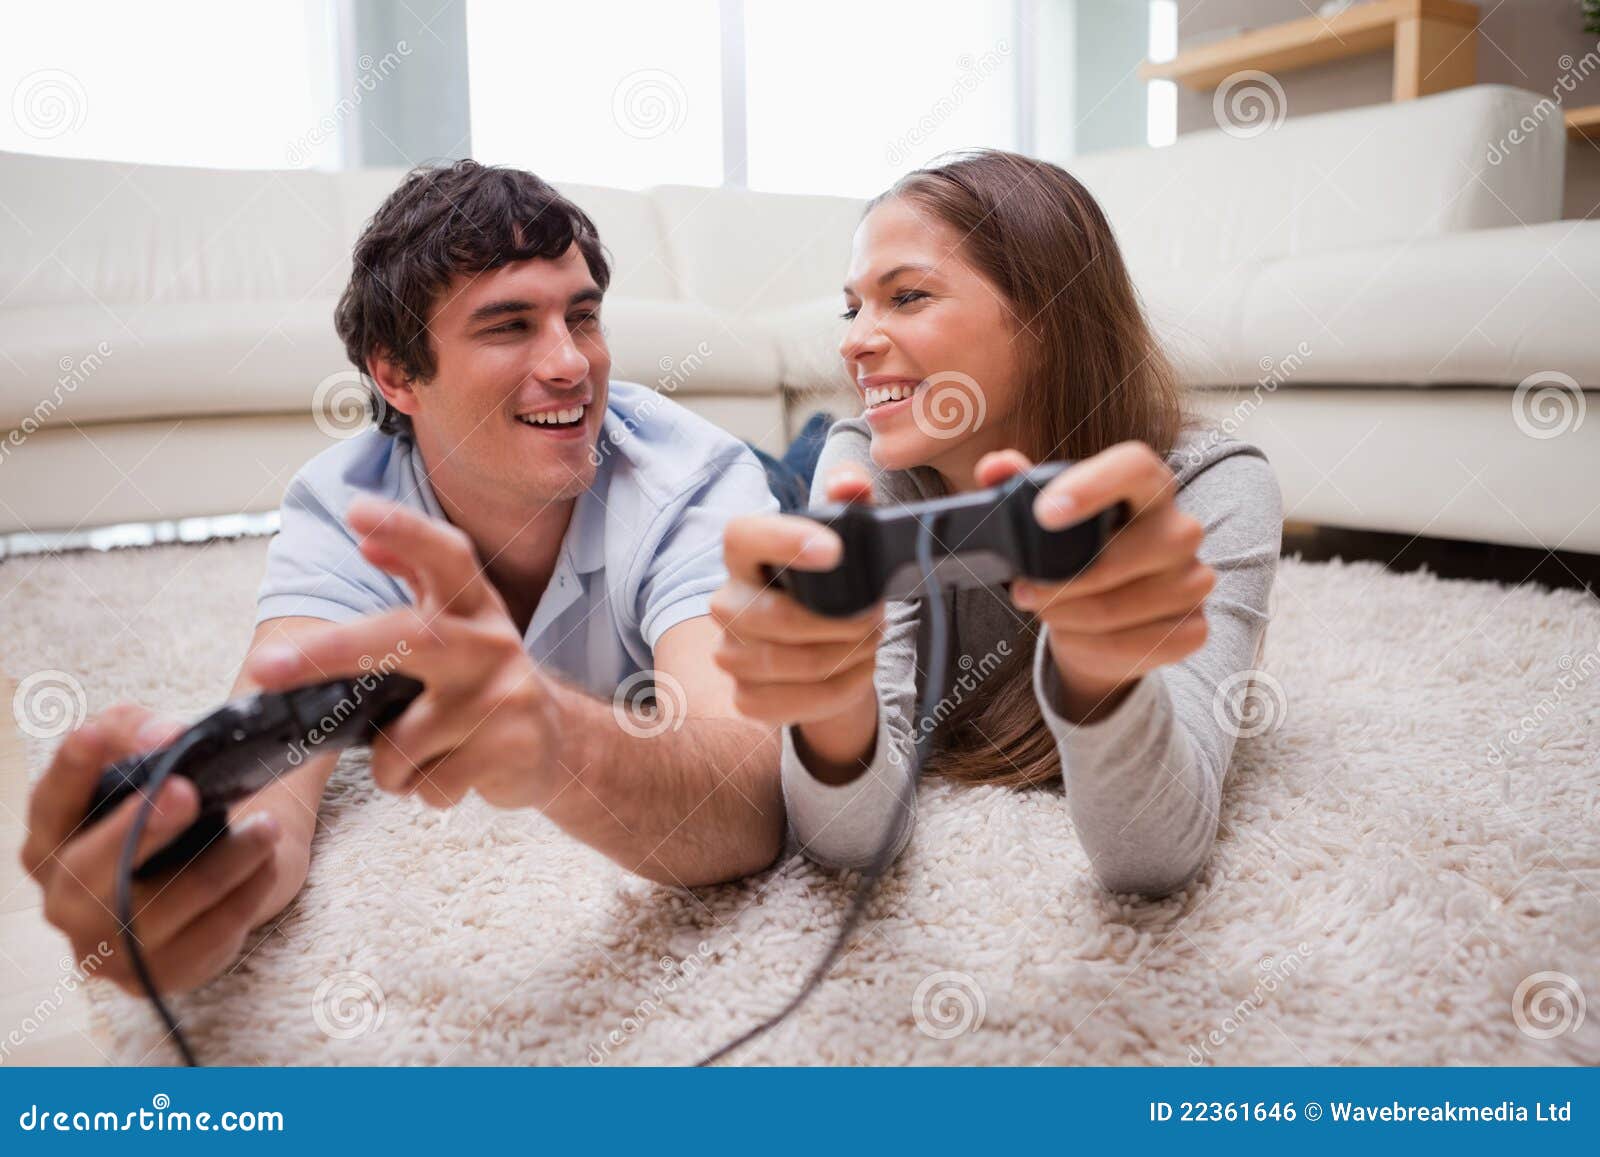 Муж играет в приставку. Пара играет в Видеоигры. Игровые пары. Влюбленная пара играет в Видеоигры. Пара играет в приставку.